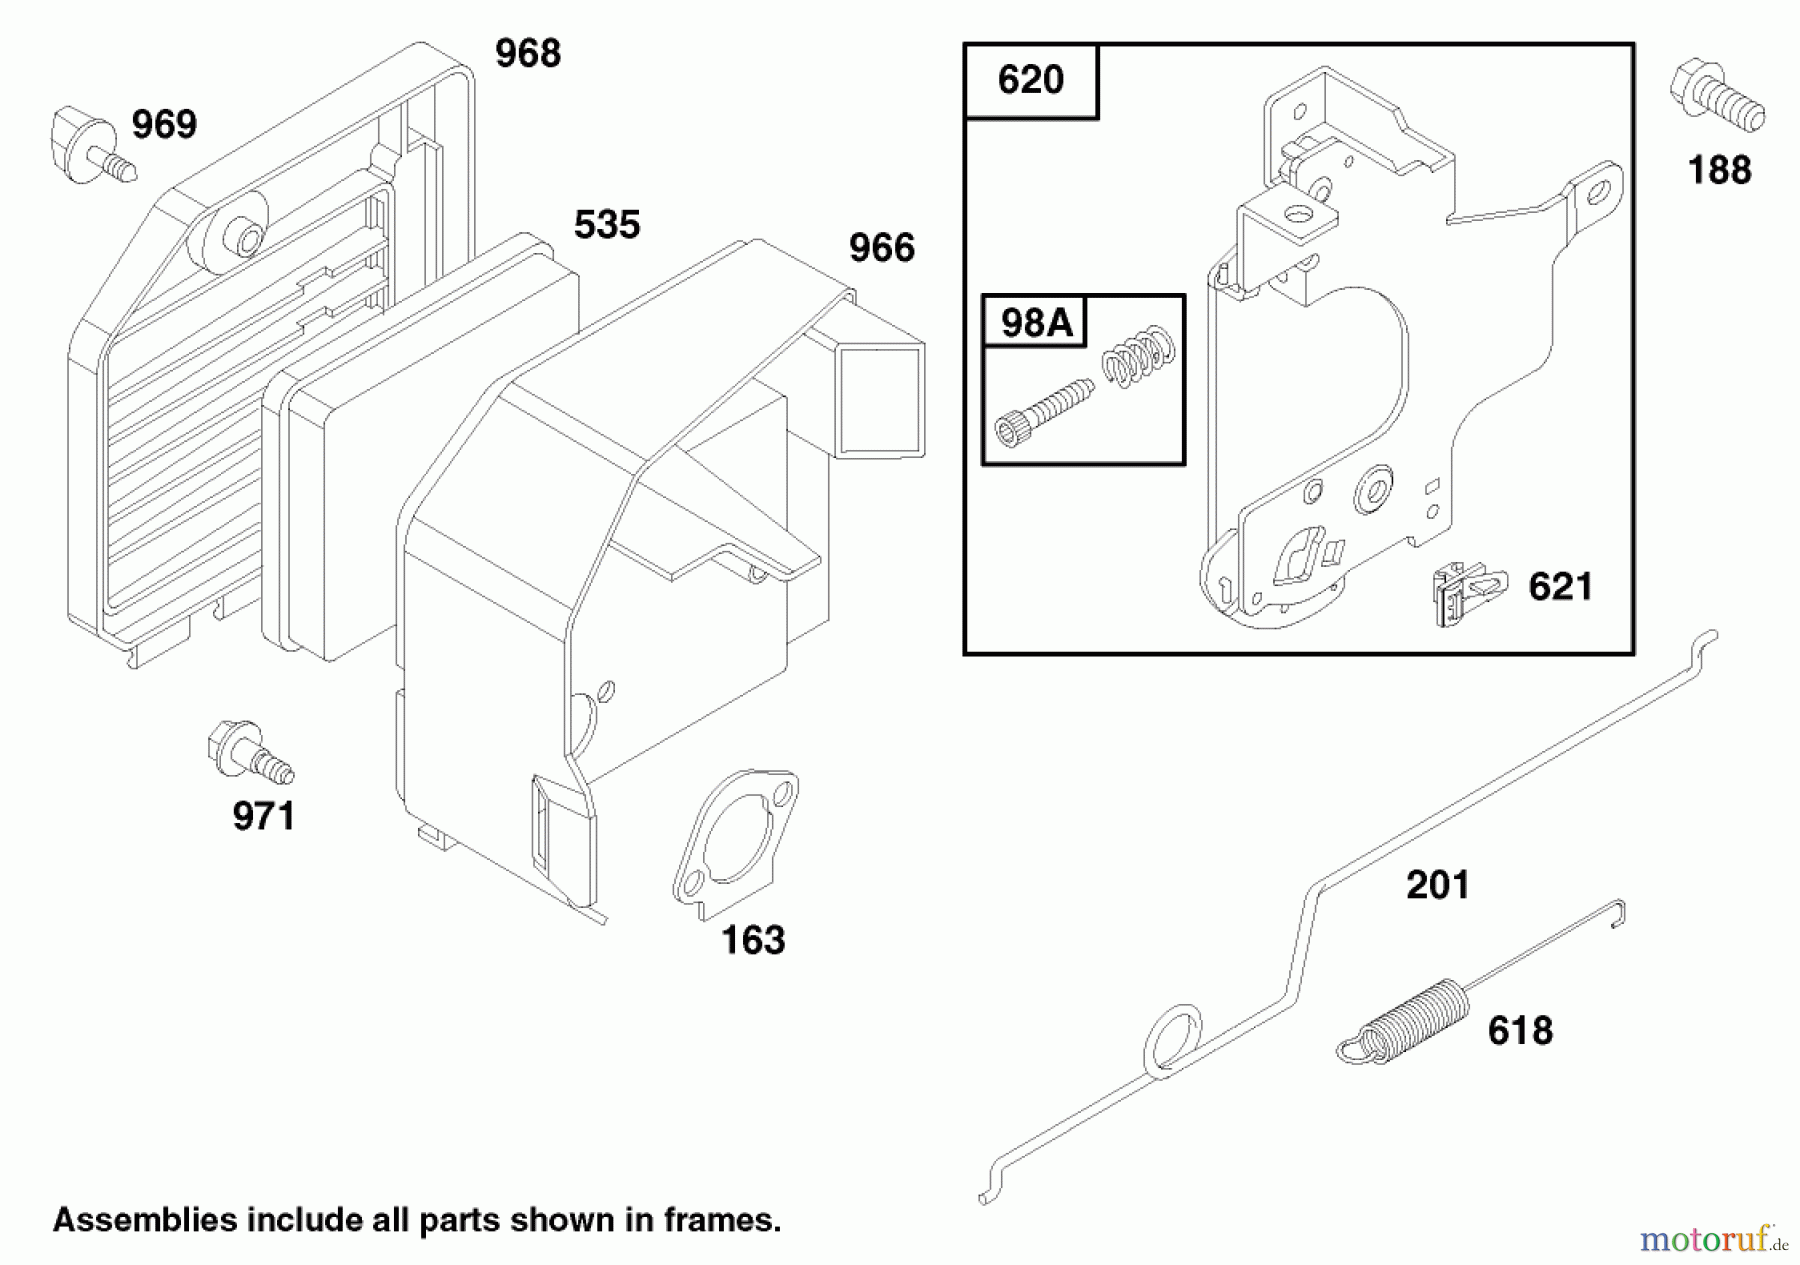  Toro Neu Mowers, Walk-Behind Seite 2 22140 - Toro Recycler Mower, 1997 (790000001-799999999) ENGINE GTS 150 #4